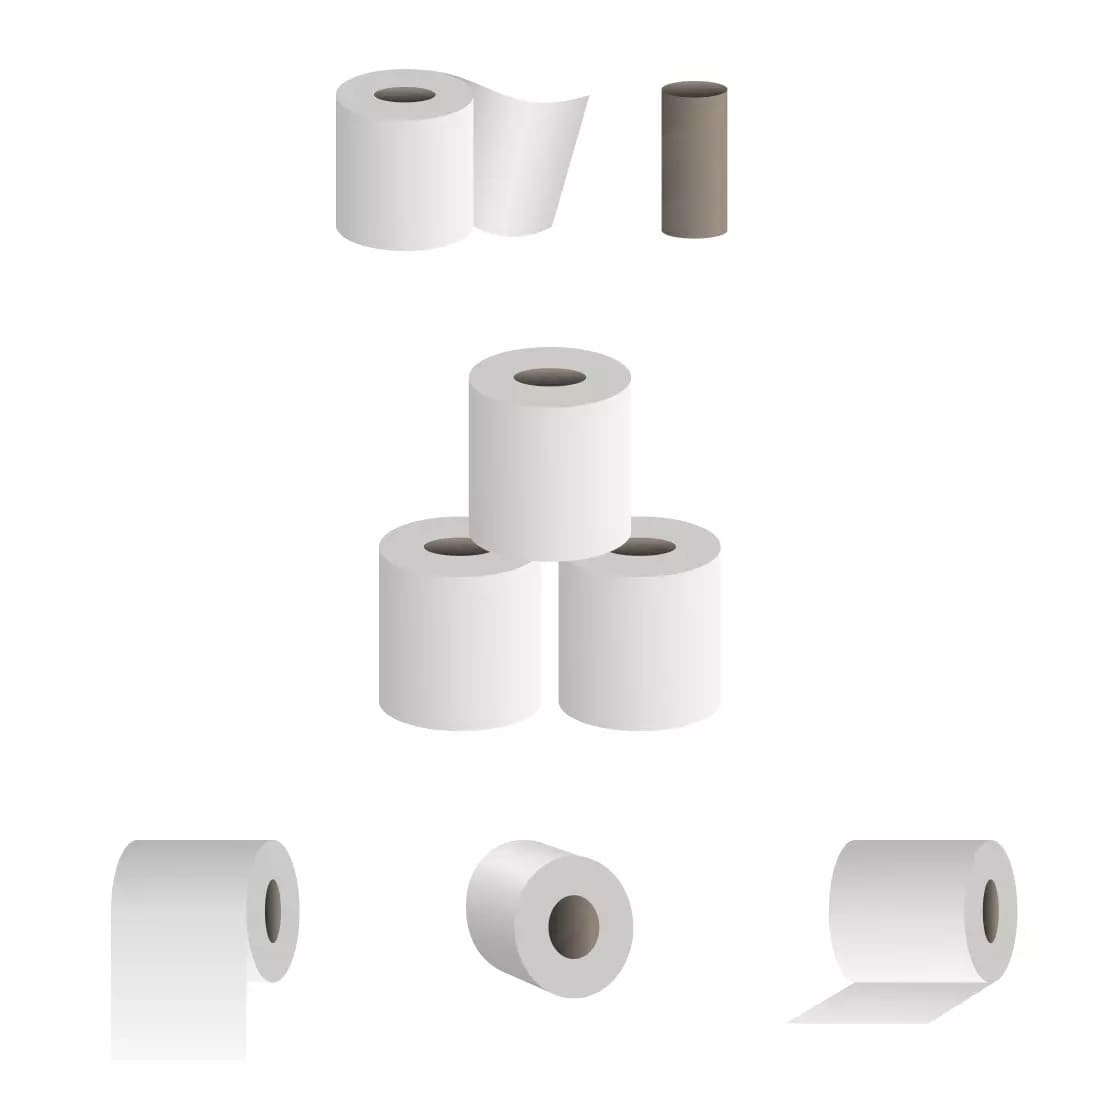 Toilet Paper SVG Bundle Preview 3.